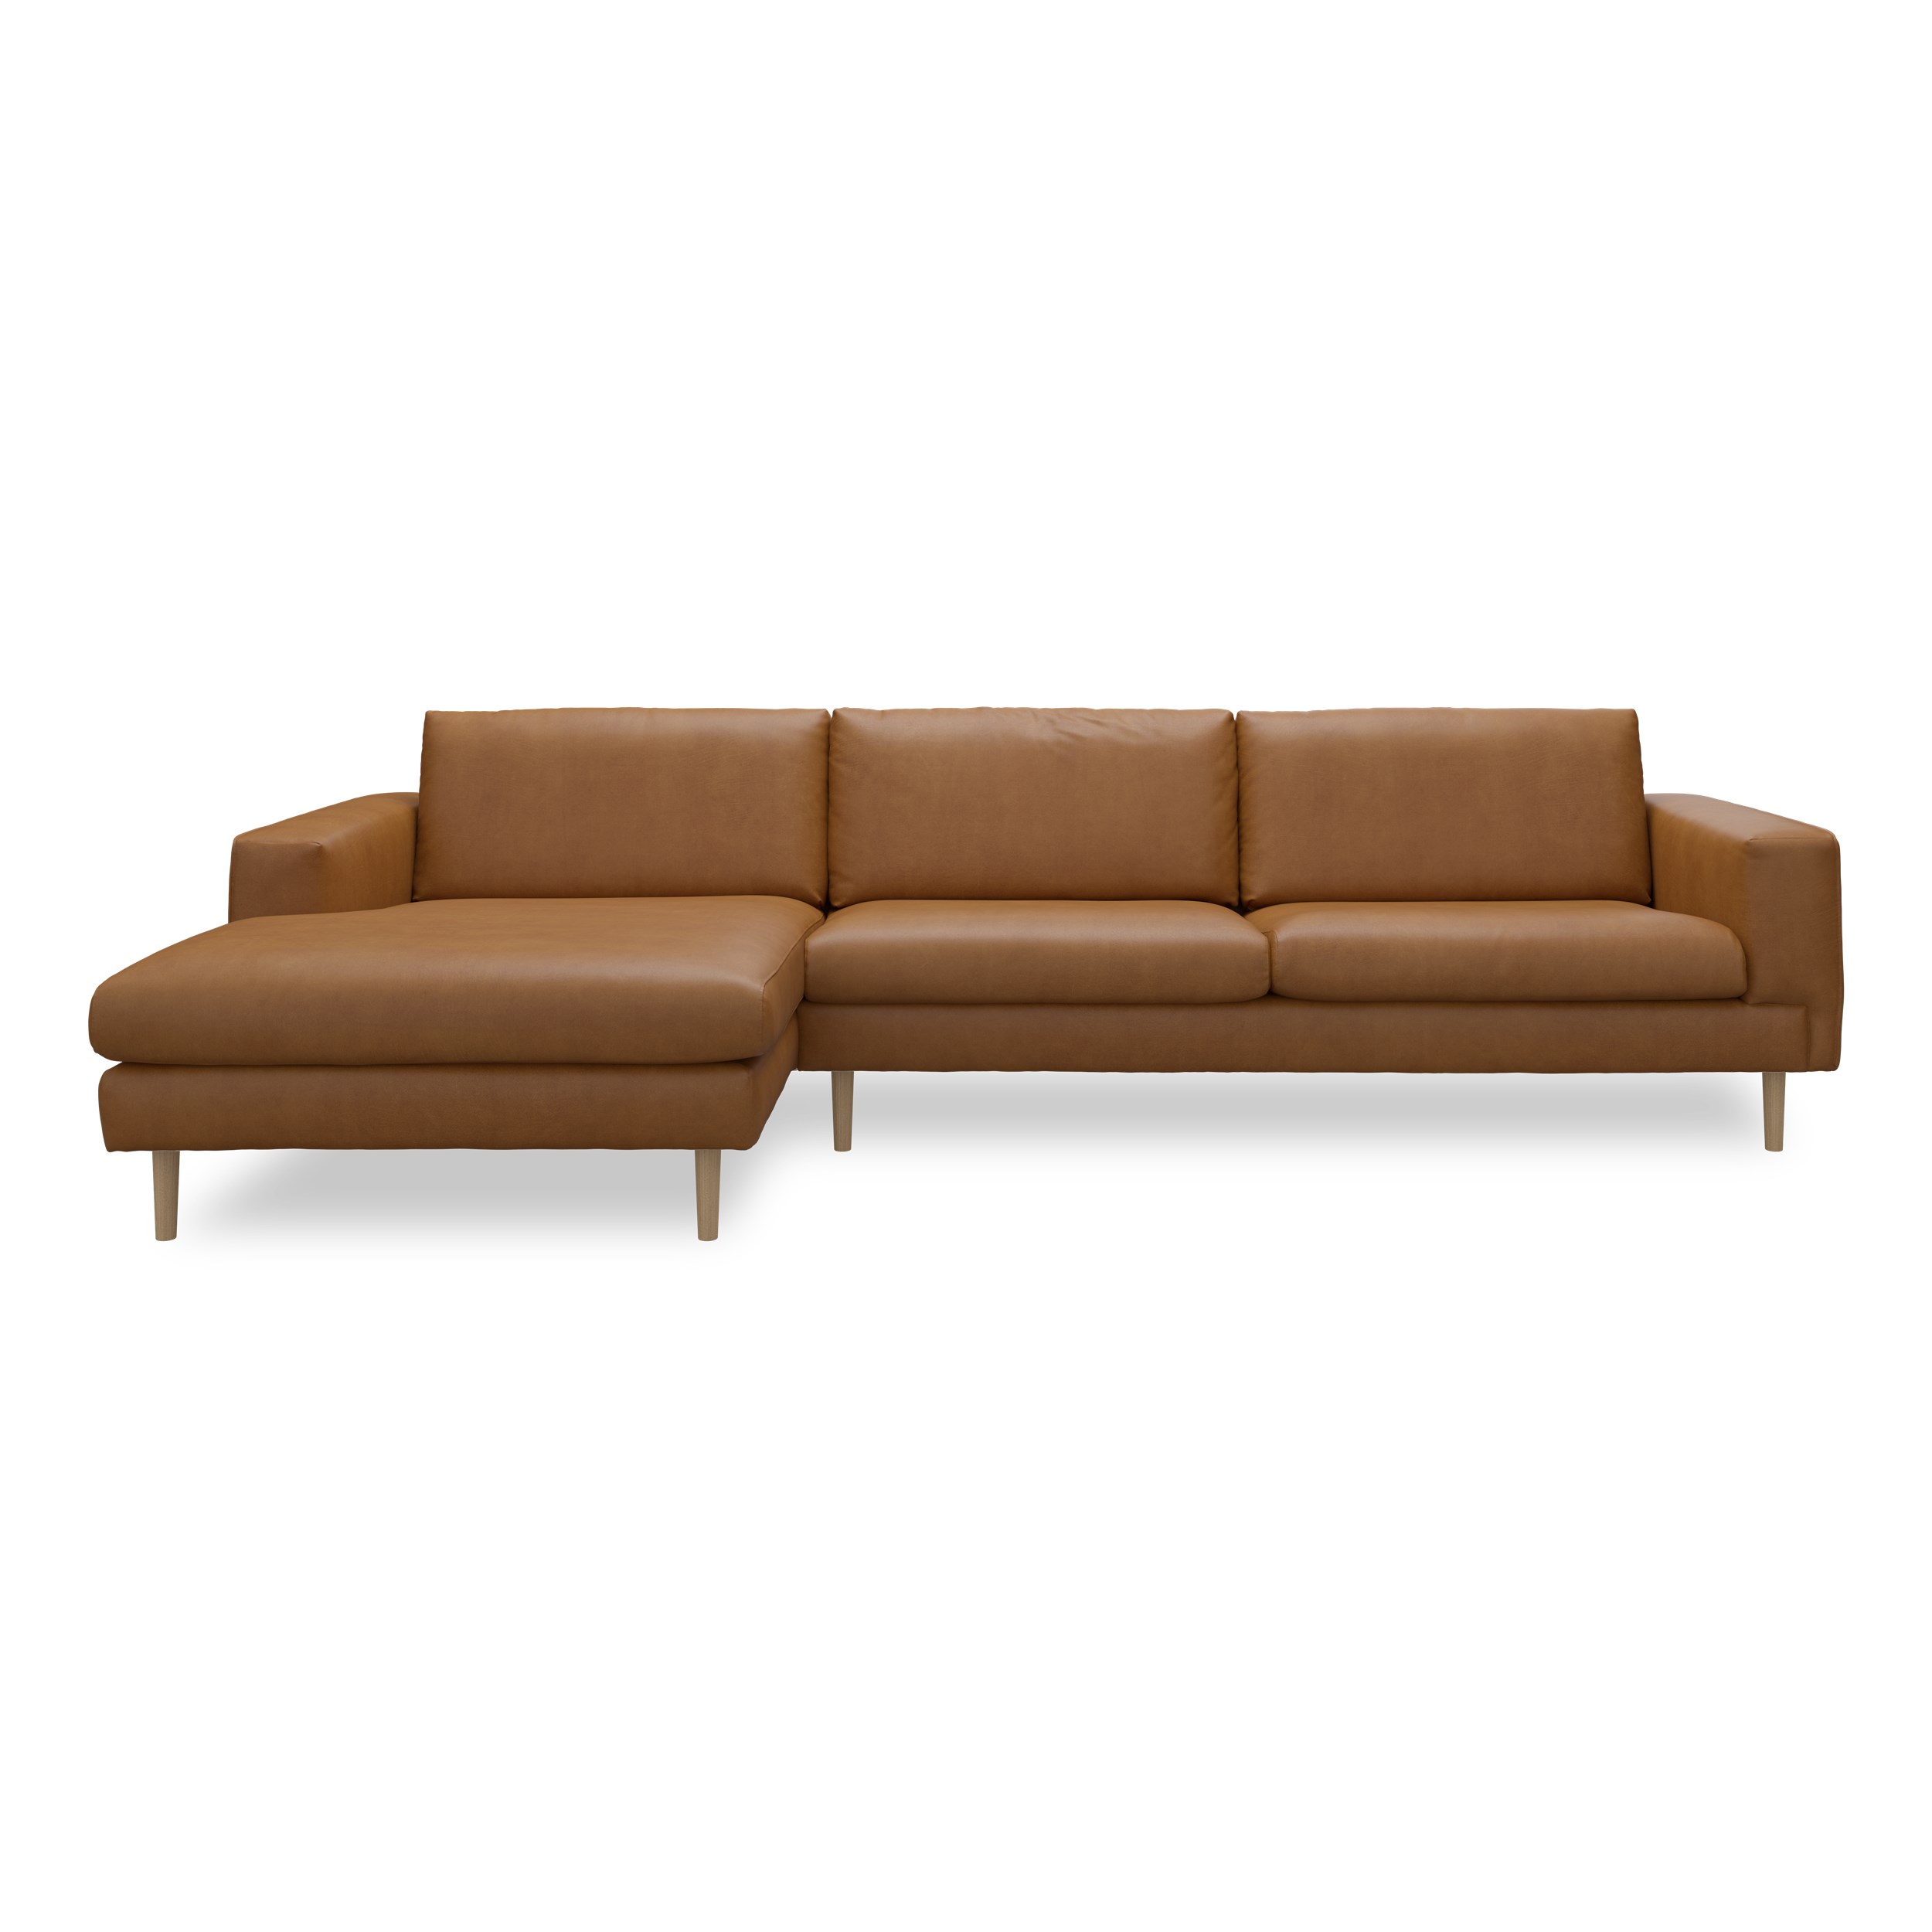 Nyland venstrevendt sofa med chaiselong - Kentucky 9 cognac bonded læder, Ben no. 141 i lakeret massiv eg og S: Pocketfjedre/koldskum R: Koldskum med fiberfyld